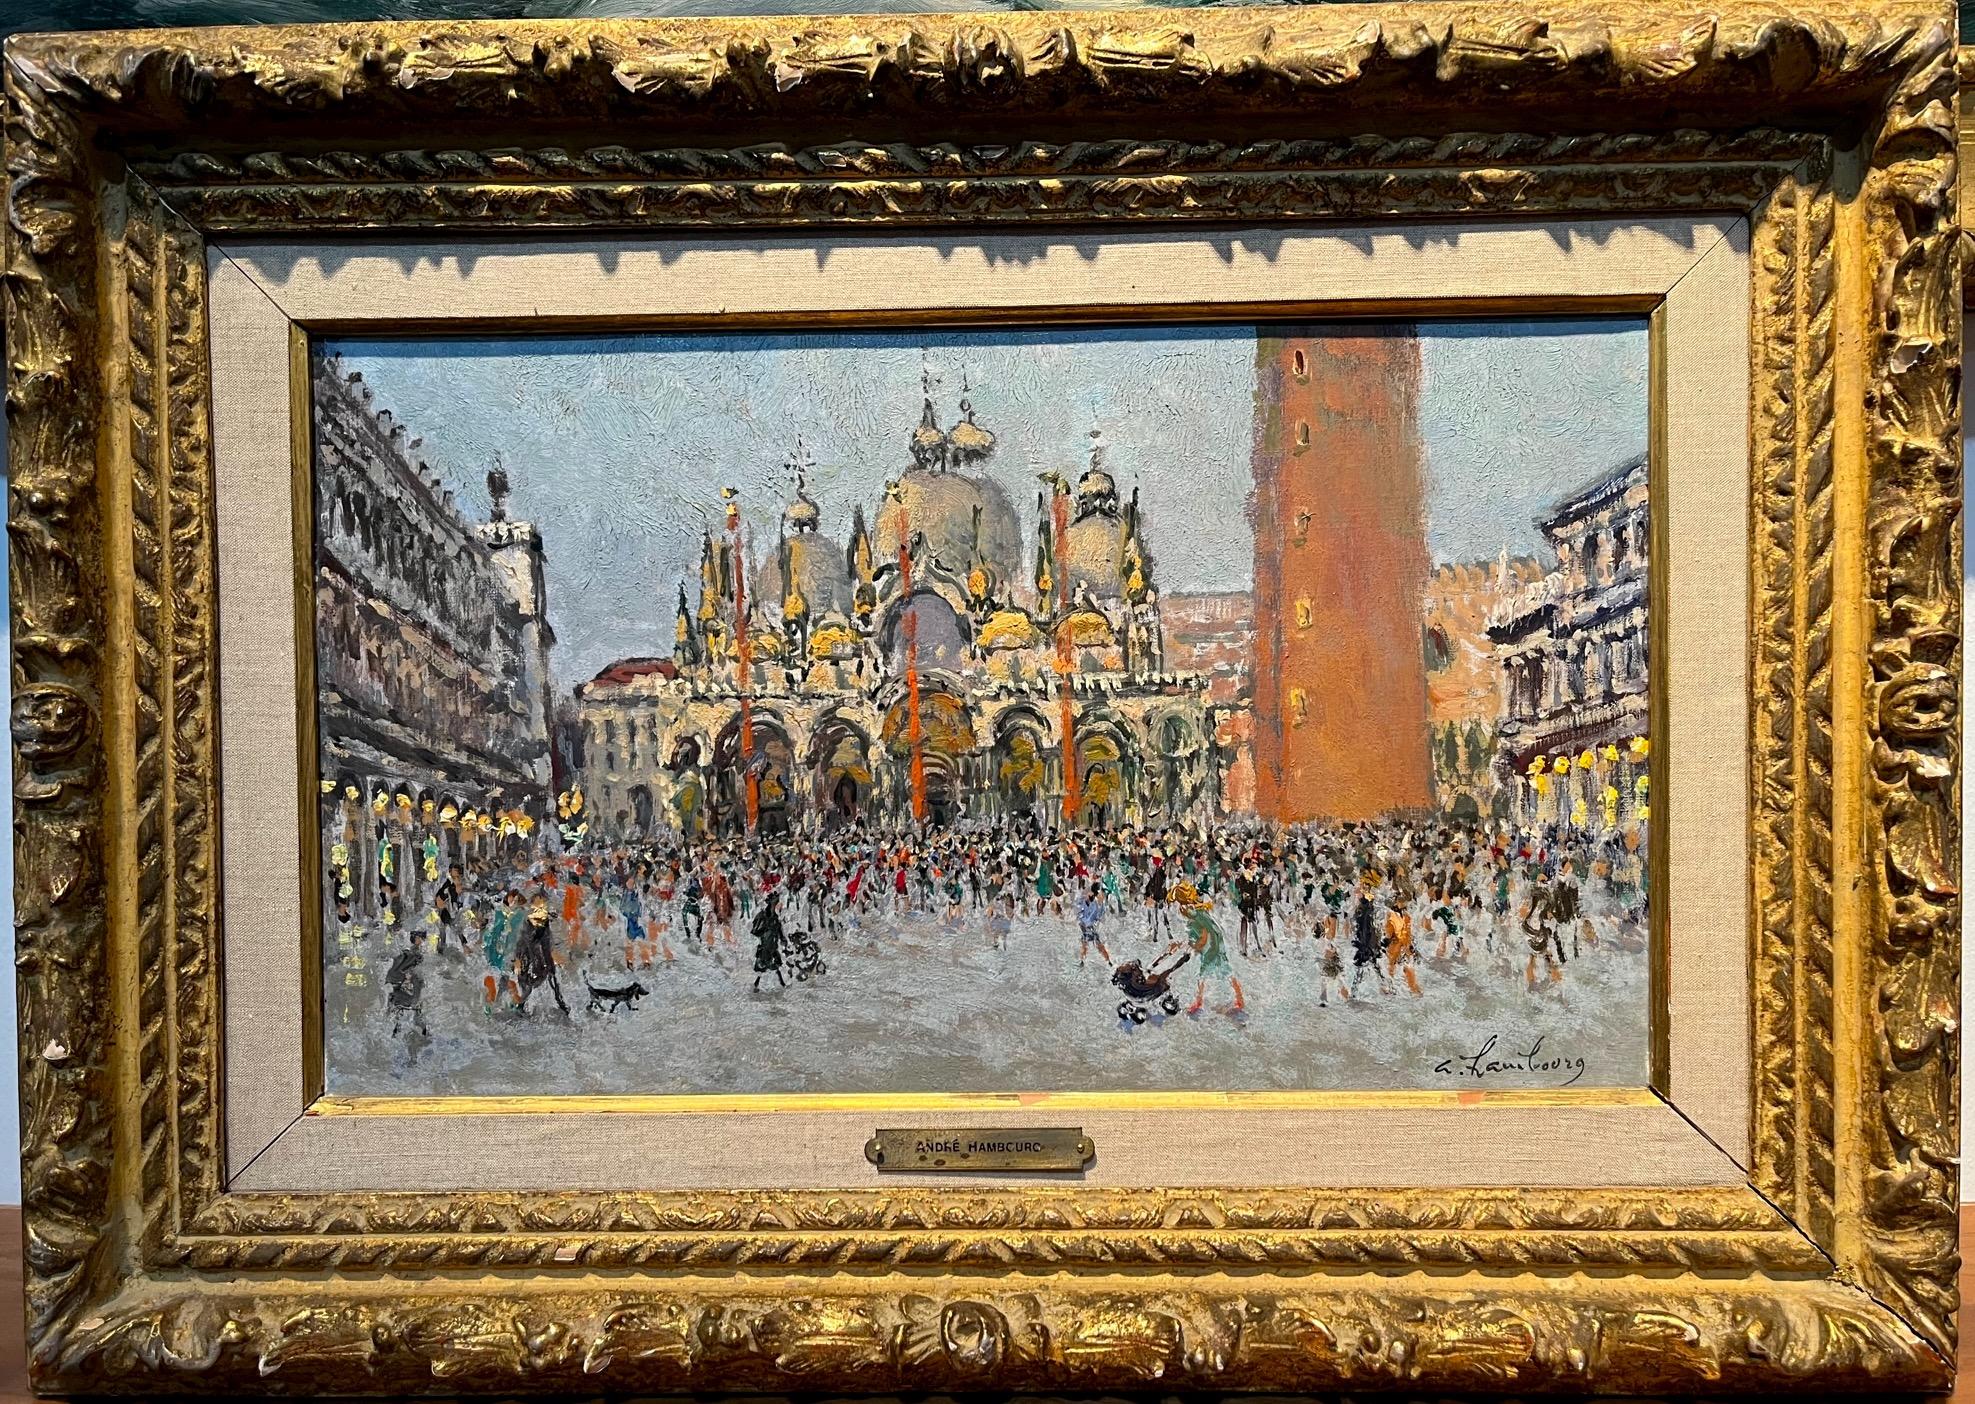 Saint Marks Square, Venise - Painting de Andre Hambourg